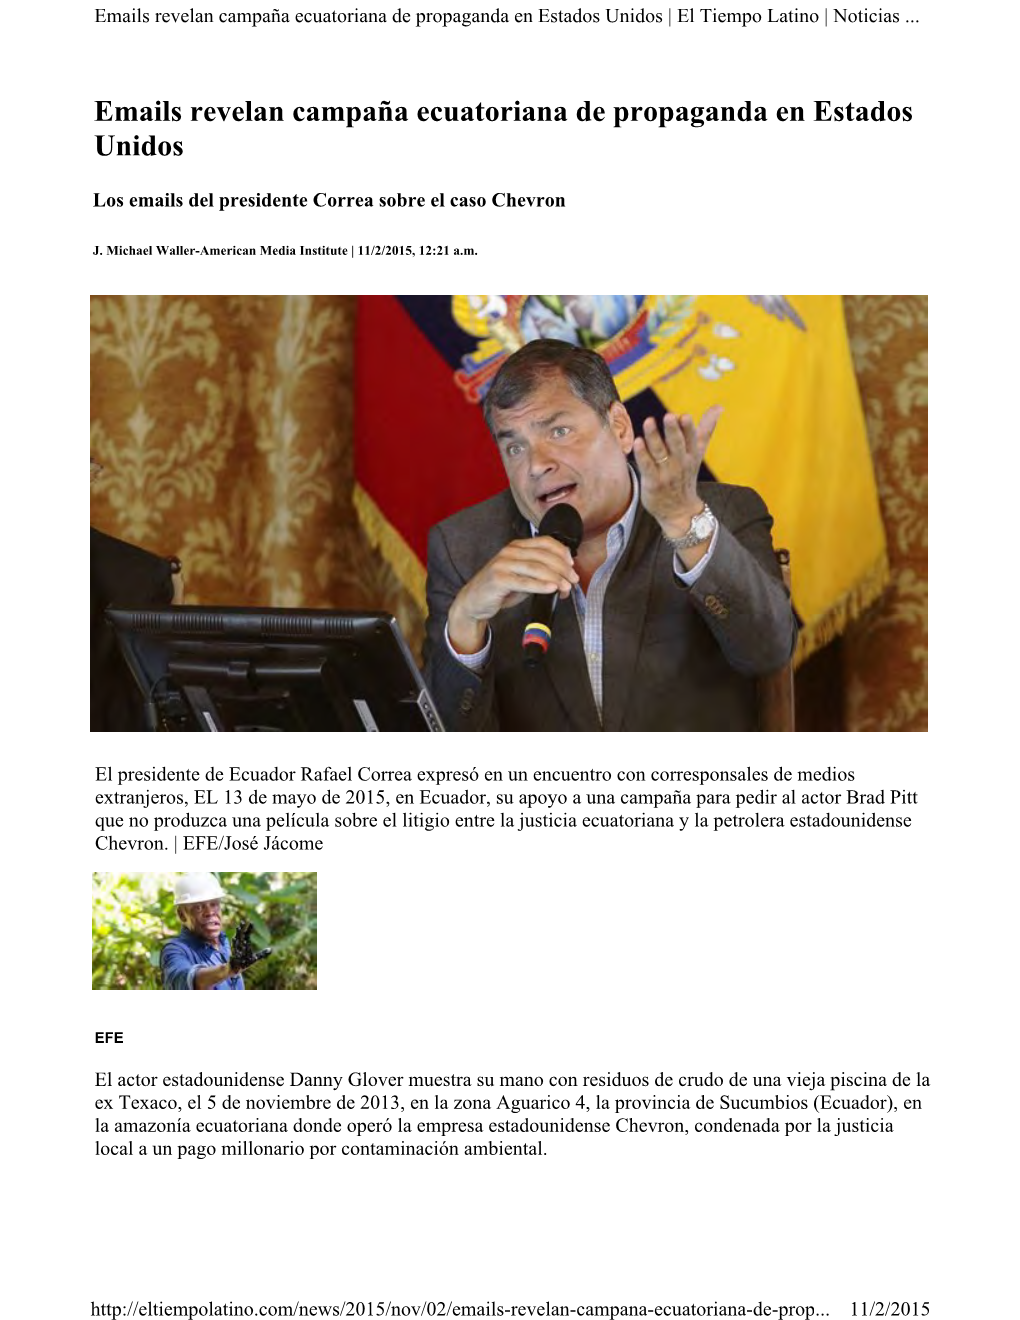 Emails Revelan Campaña Ecuatoriana De Propaganda En Estados Unidos | El Tiempo Latino | Noticias